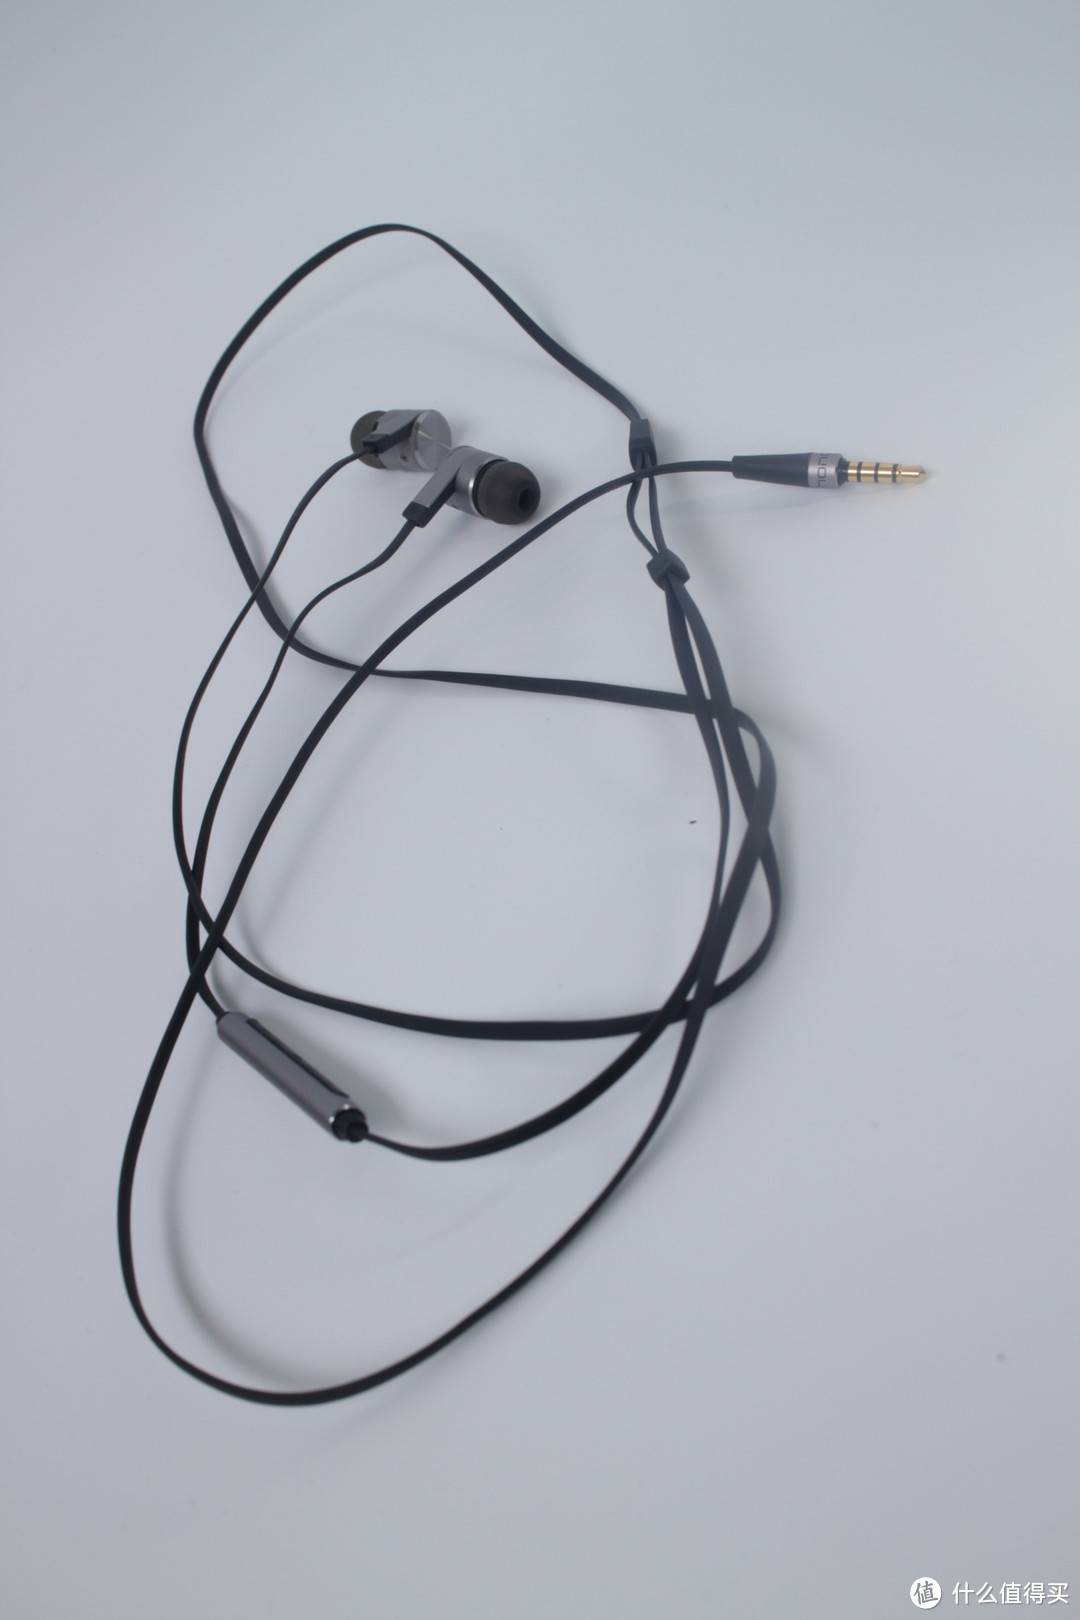 物理调音黑科技--华为 引擎耳机2代 动圈式耳机 晒单